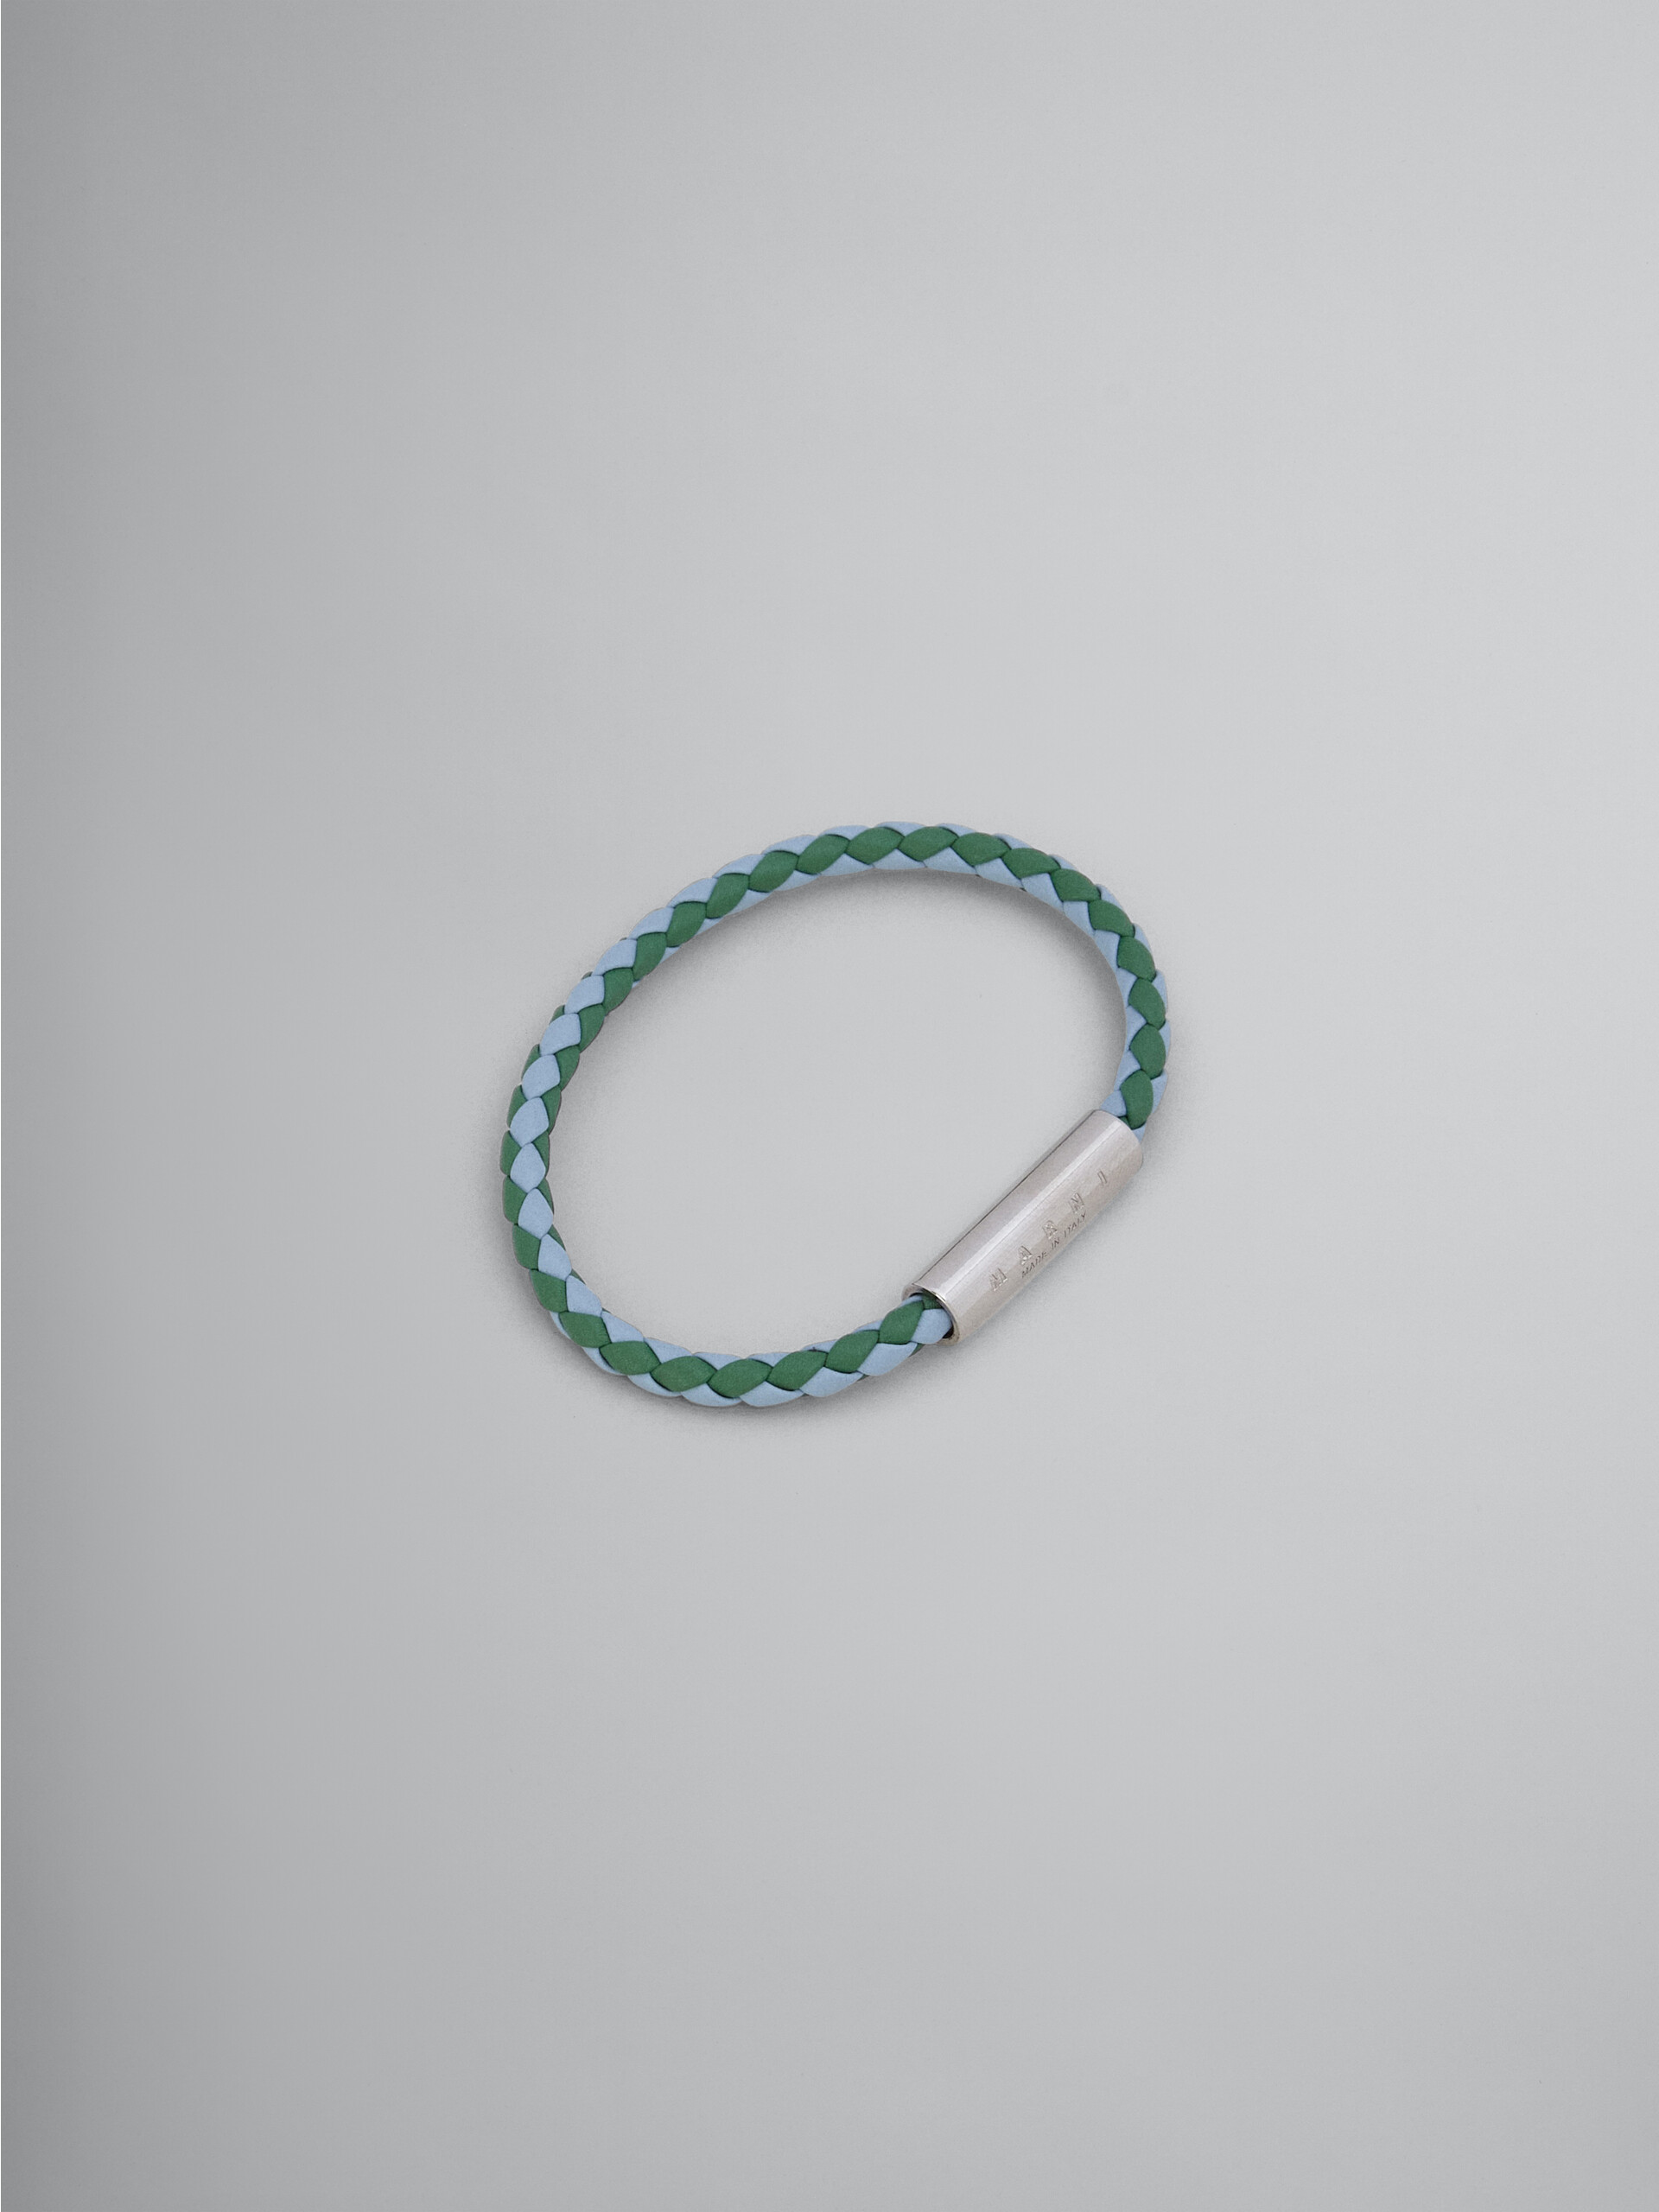 Bracciale in pelle intrecciata verde e azzurro - Braccialetto - Image 1